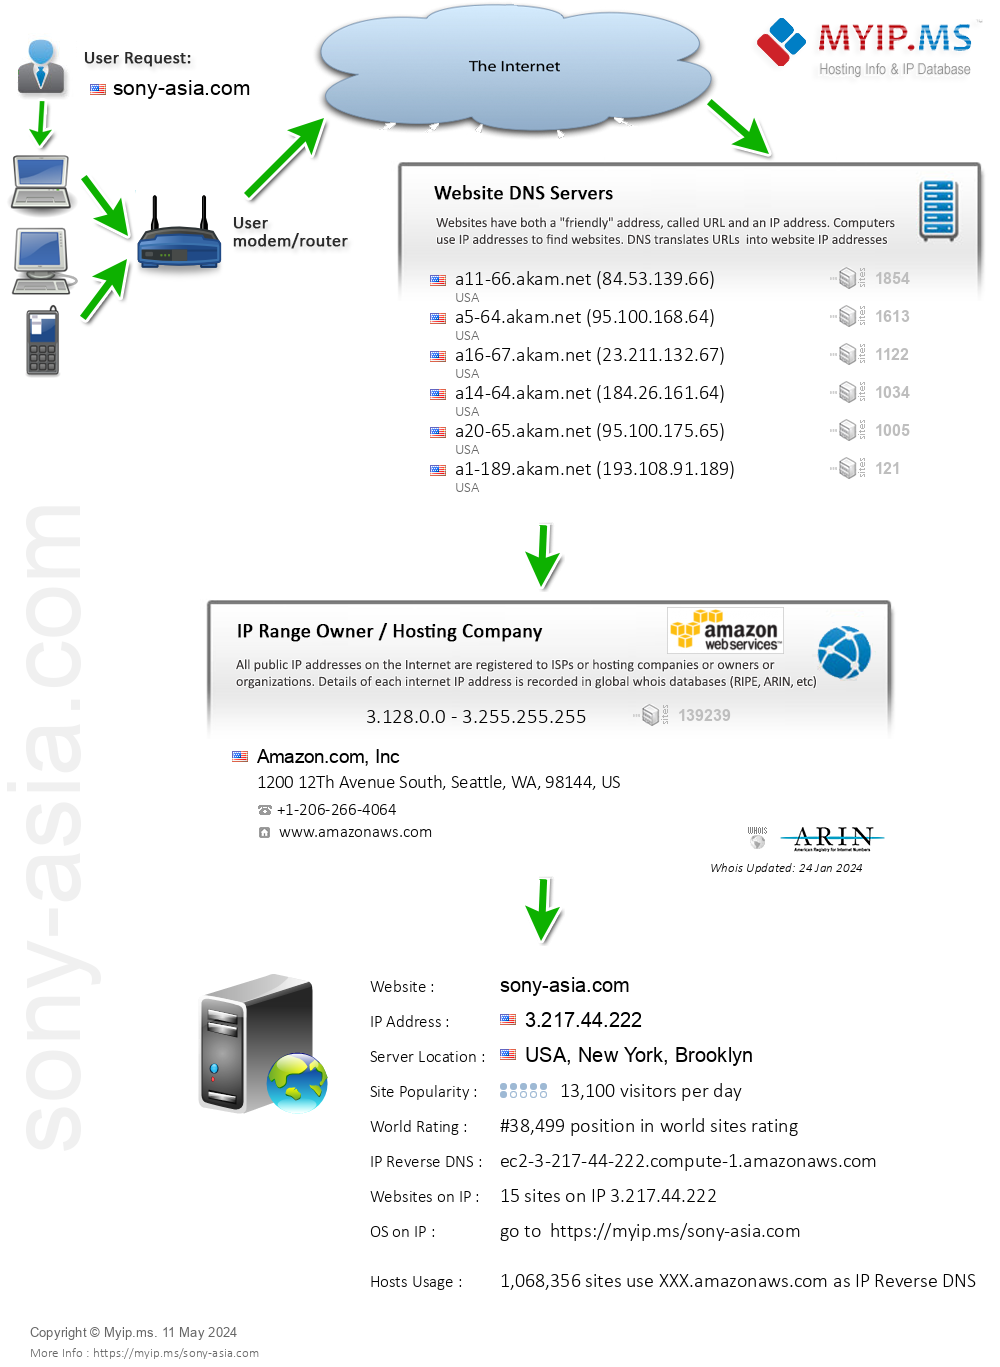 Sony-asia.com - Website Hosting Visual IP Diagram